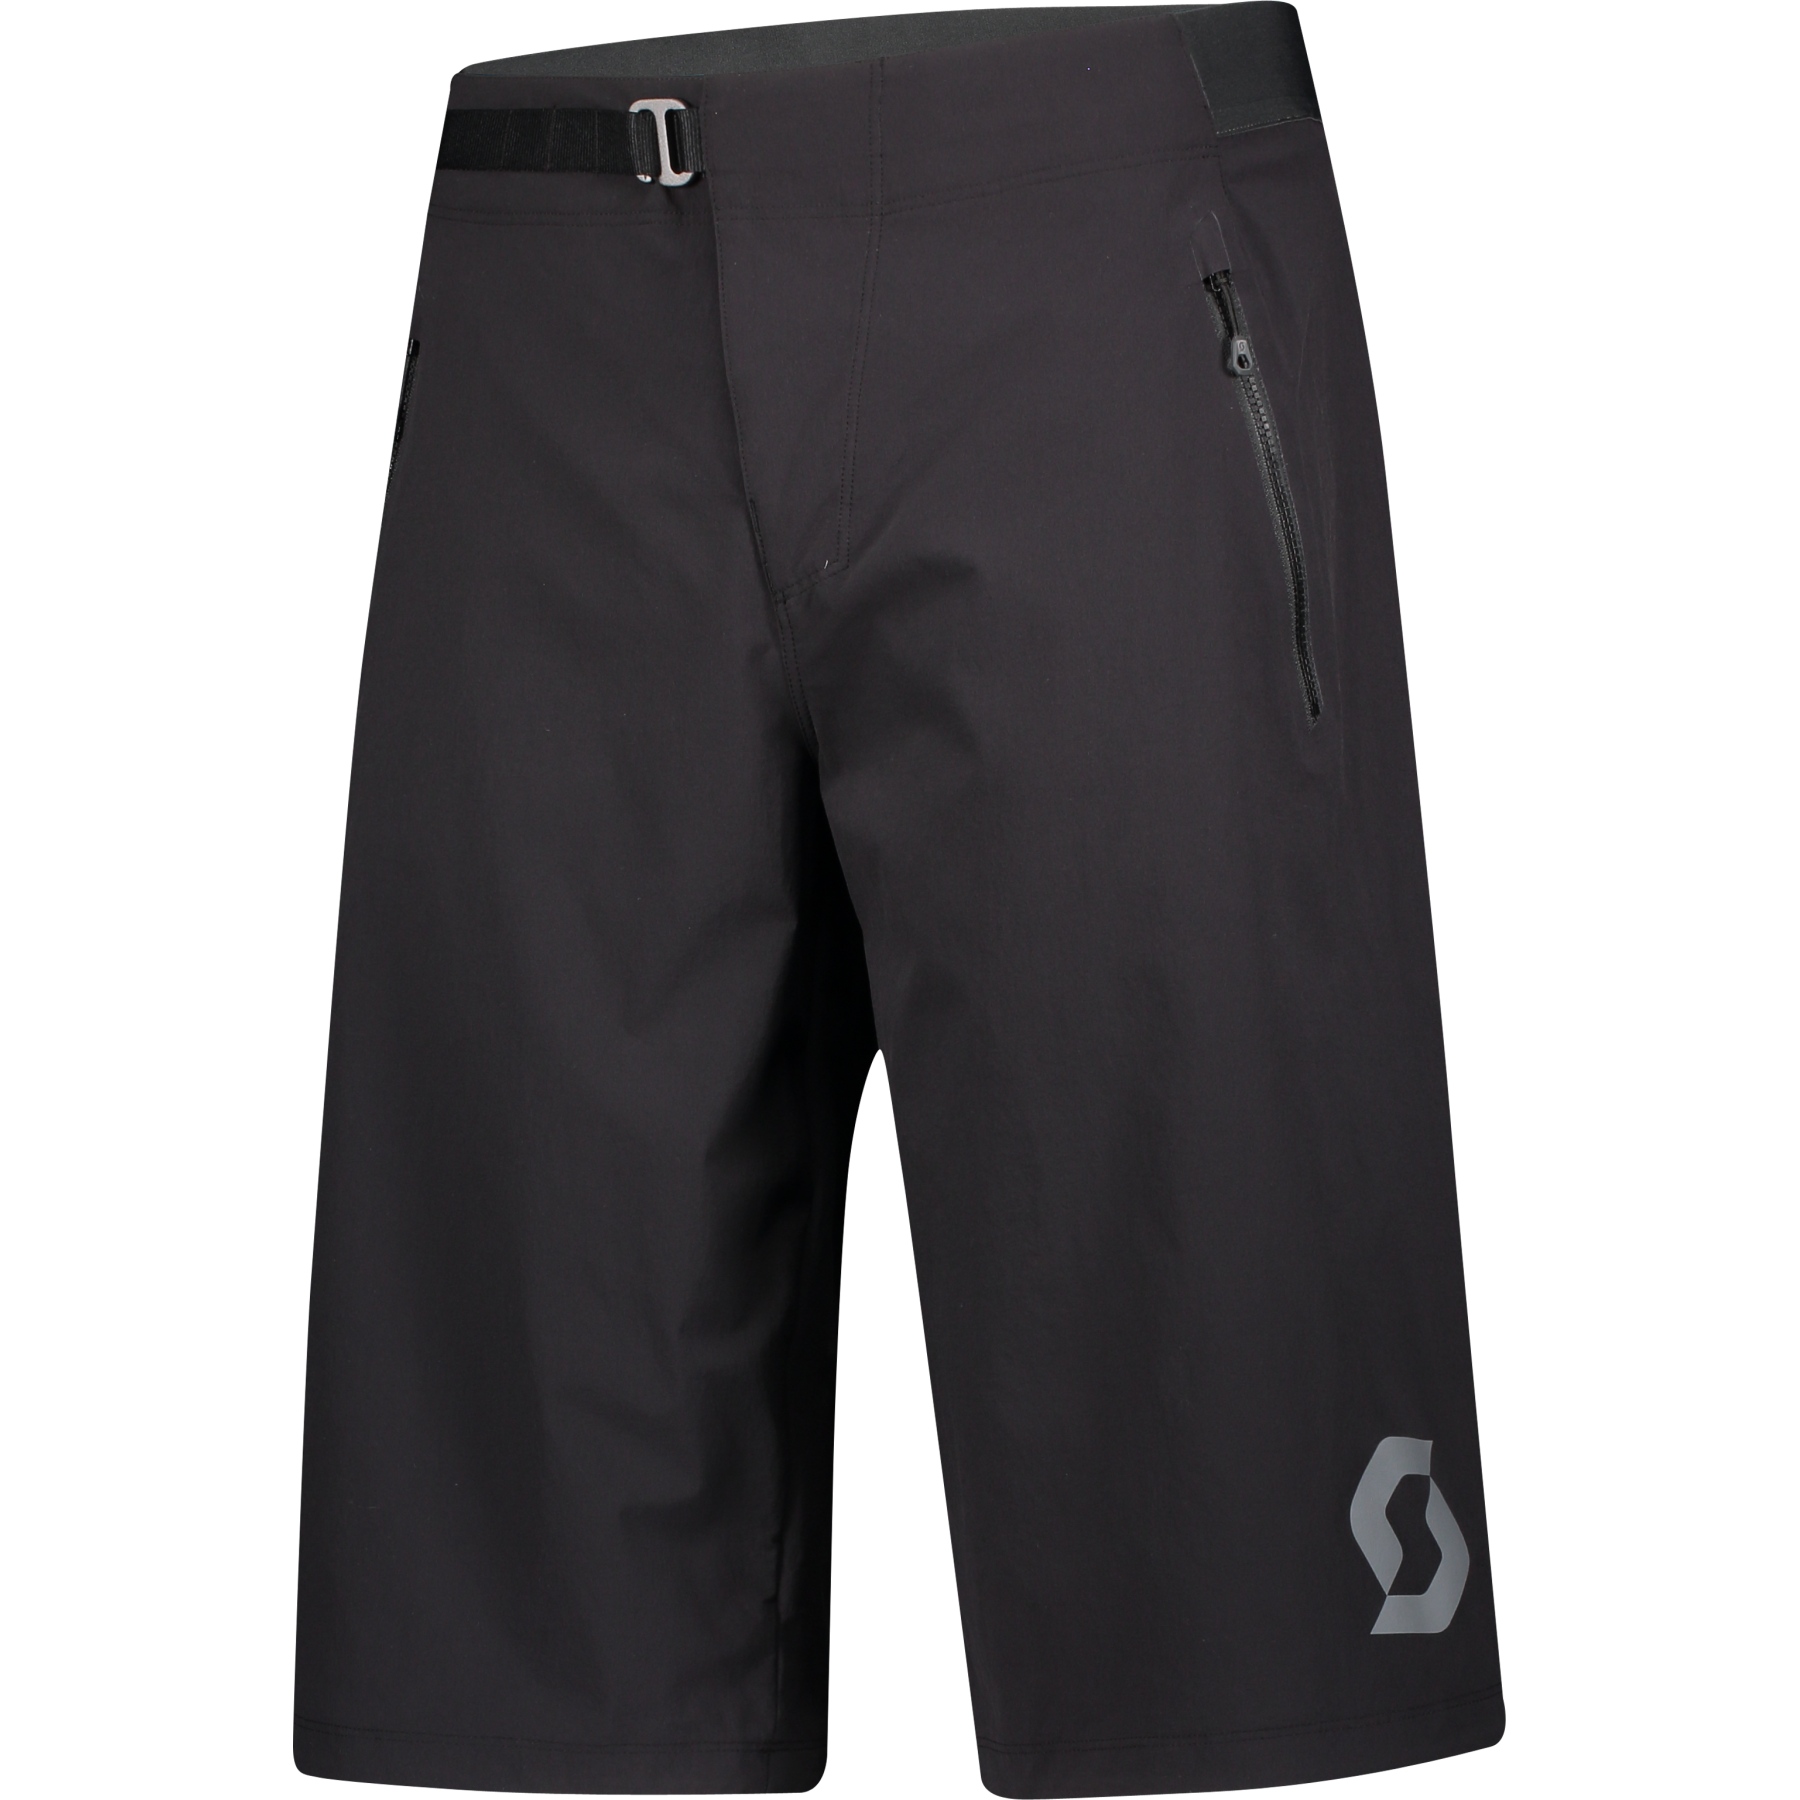 Produktbild von SCOTT Trail Vertic Shorts mit Sitzpolster Herren - schwarz